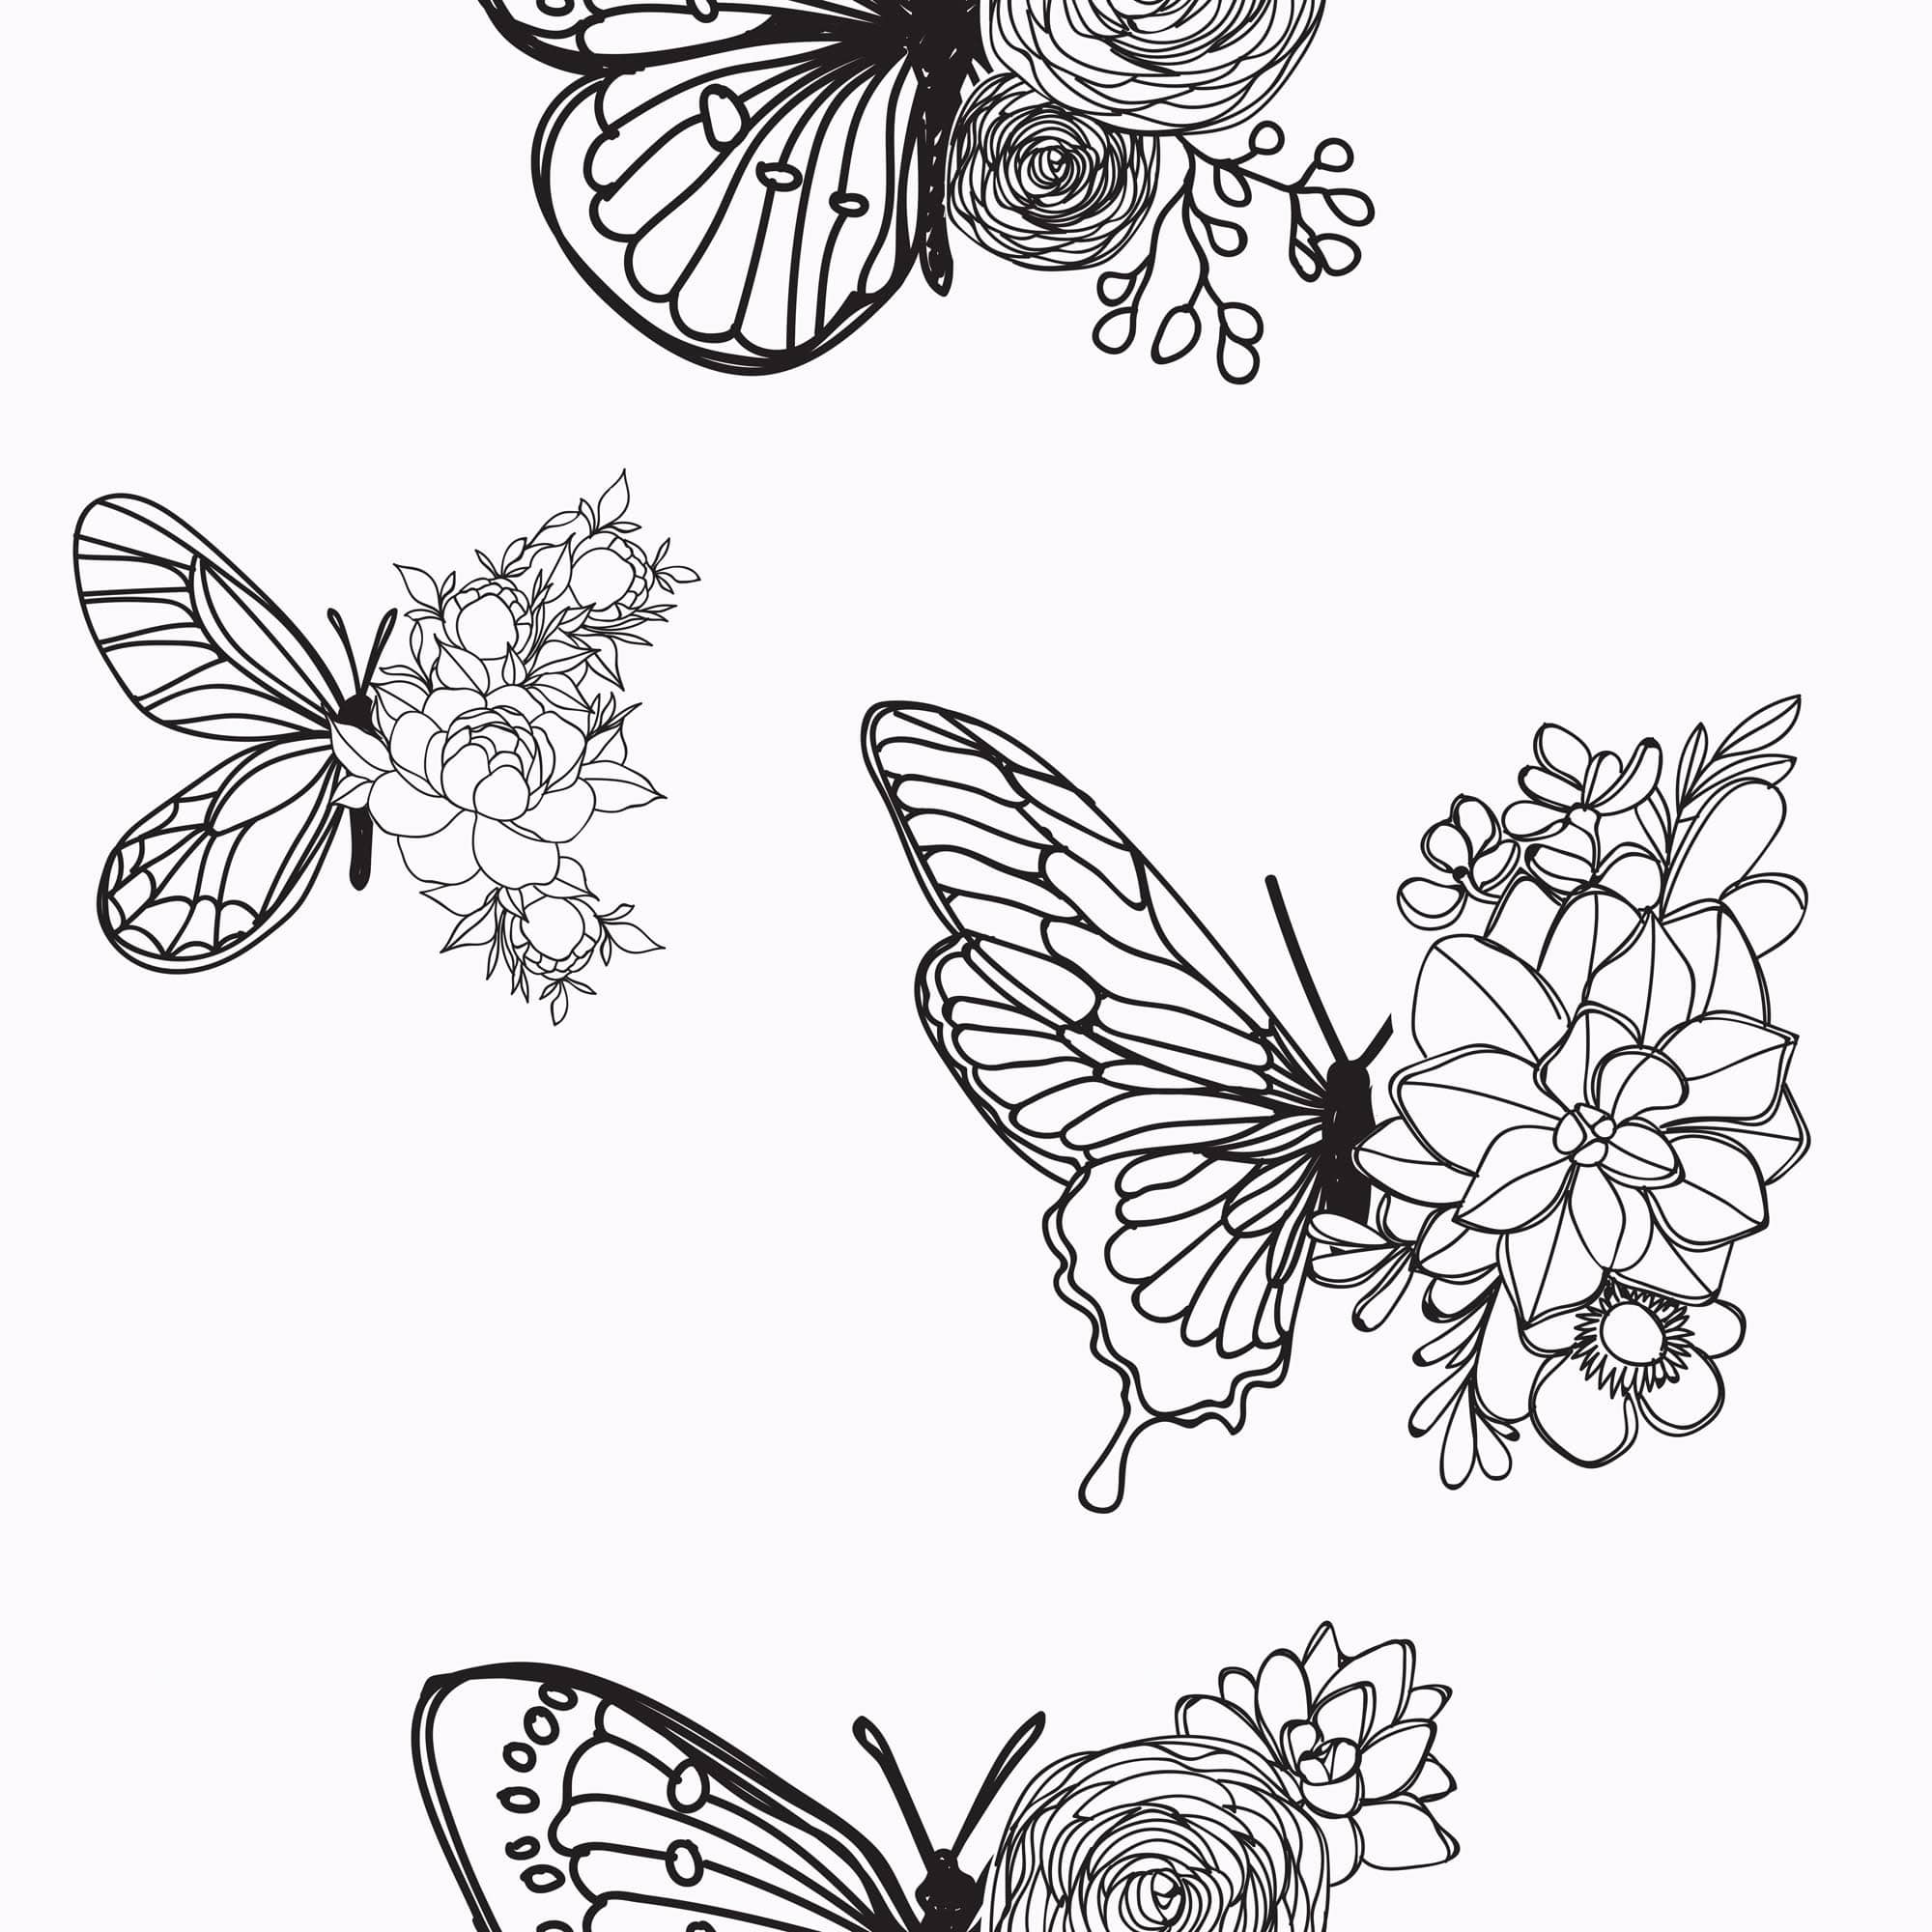 Aesthetic Butterfly Desktop Wallpapers